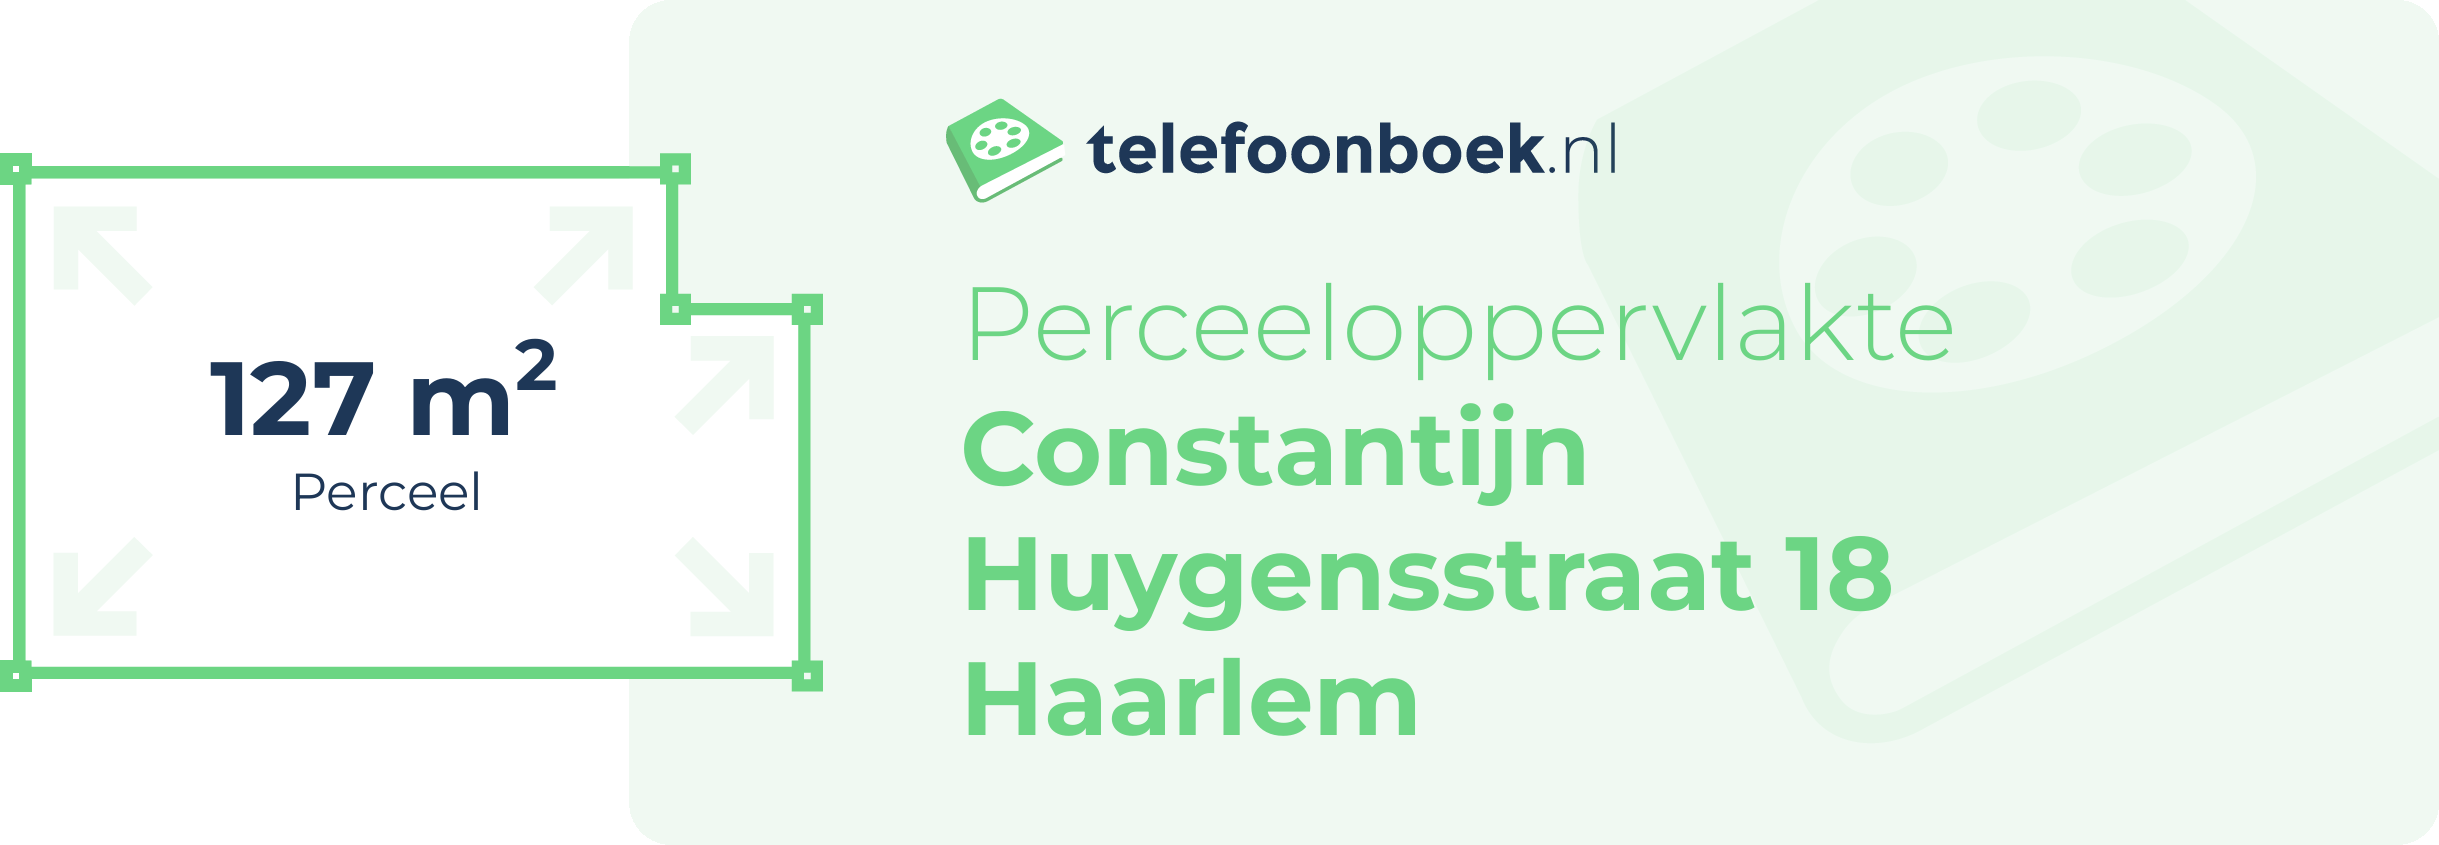 Perceeloppervlakte Constantijn Huygensstraat 18 Haarlem